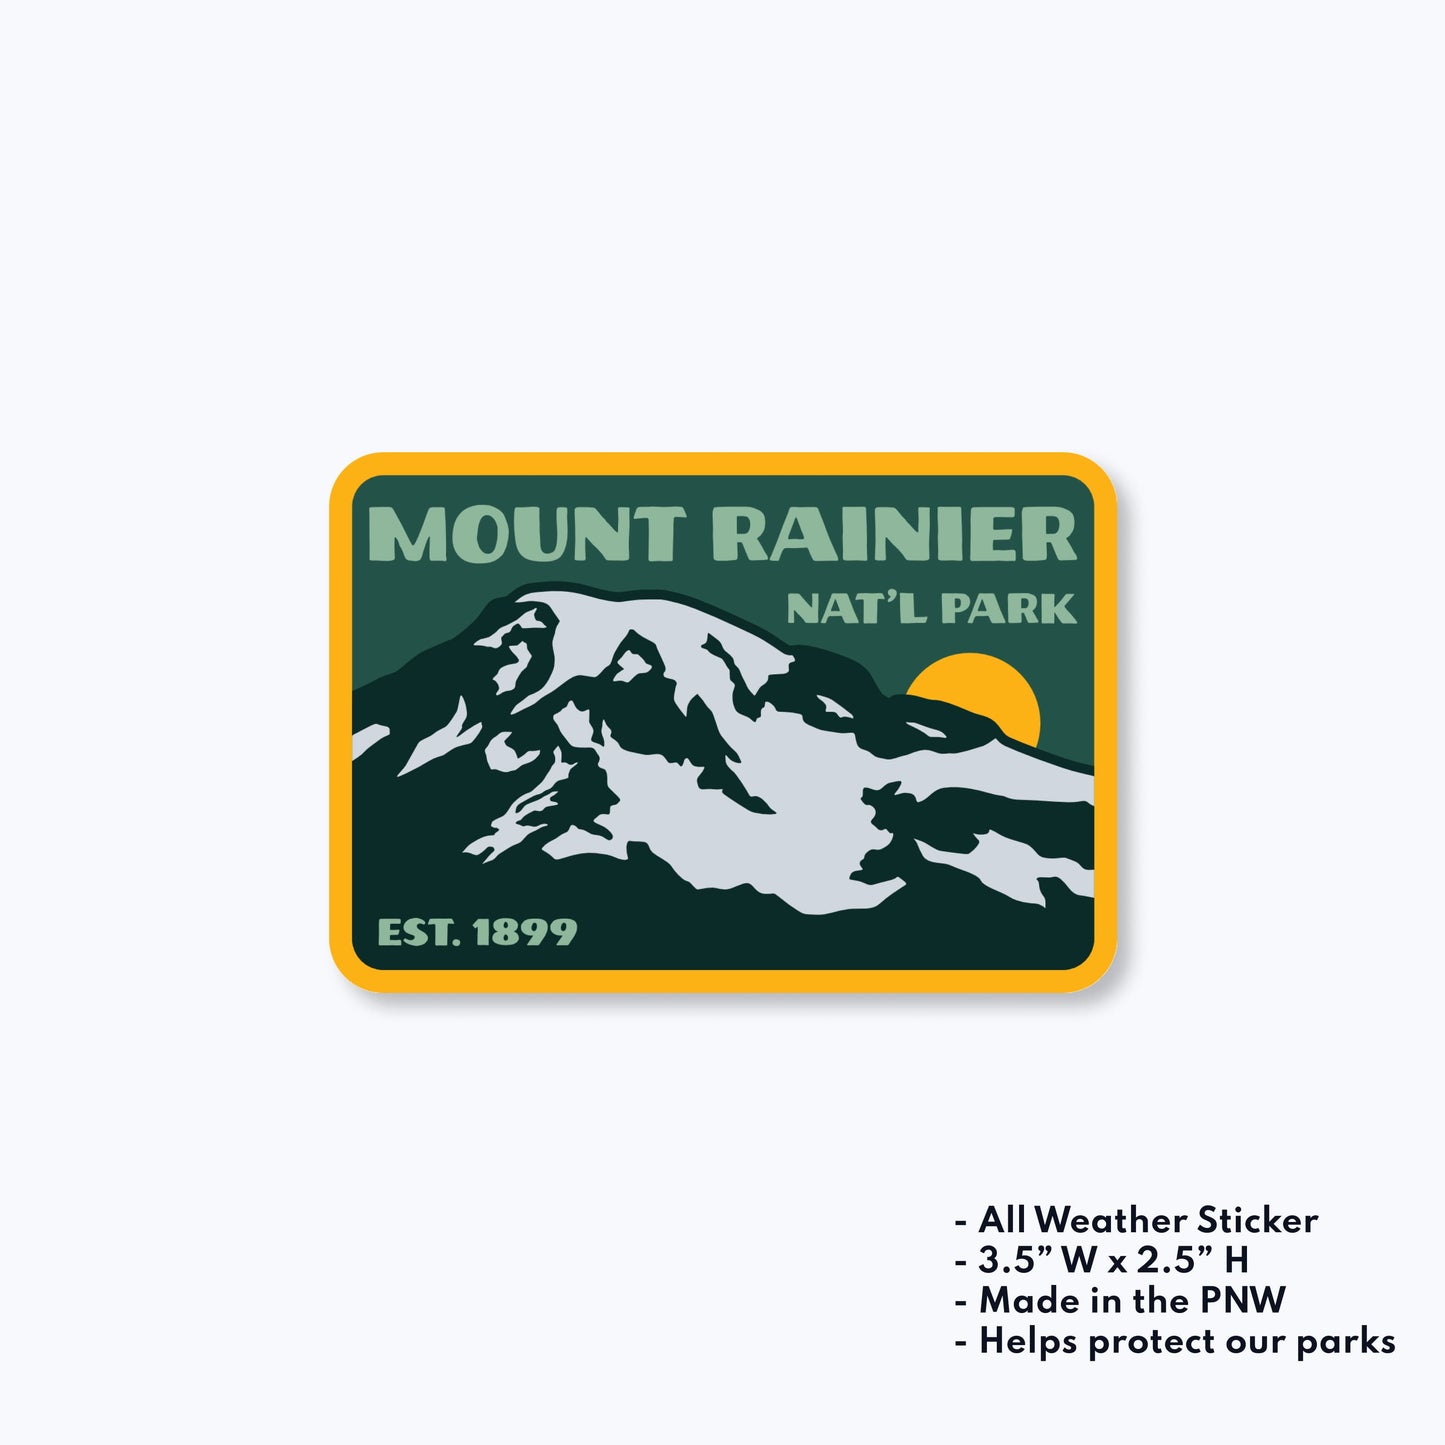 Mount Rainier National Park Est 1899 Sticker